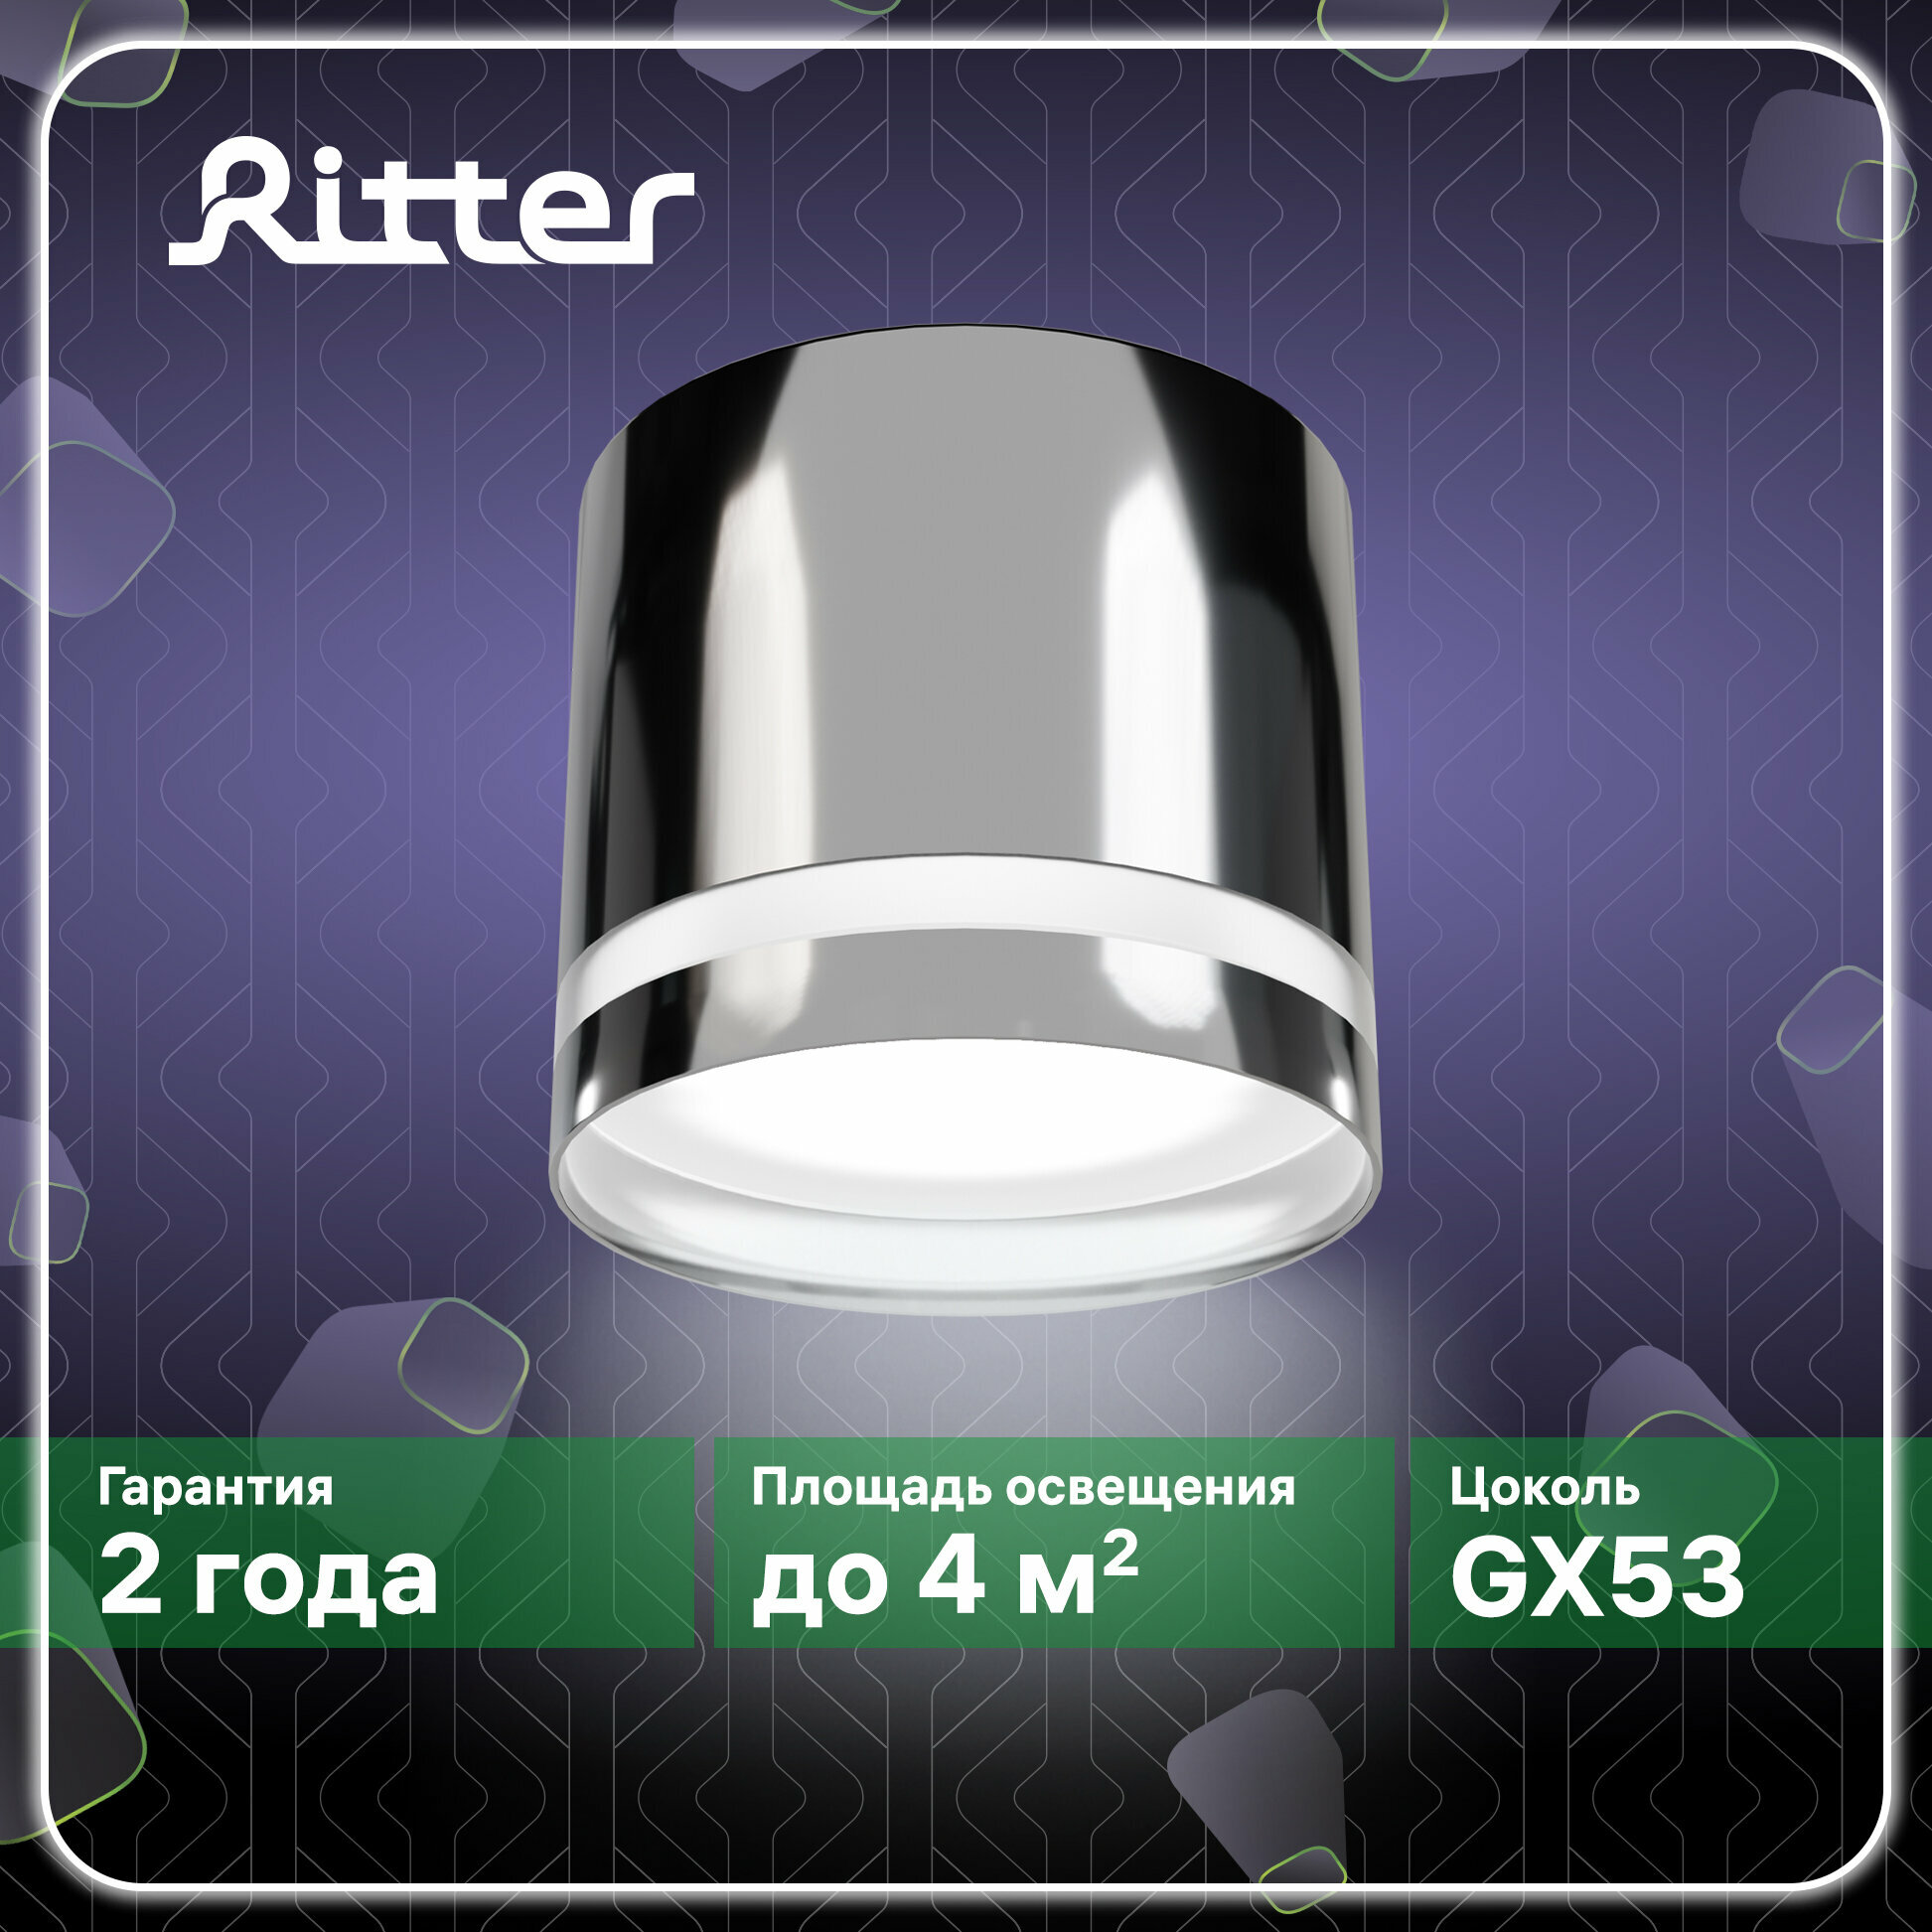 Светильник накладной Arton, цилиндр, 85х80мм, GX53, алюминий, хром, настенно-потолочный светильник для гостиной, кухни, спальни, Ritter, 59944 9